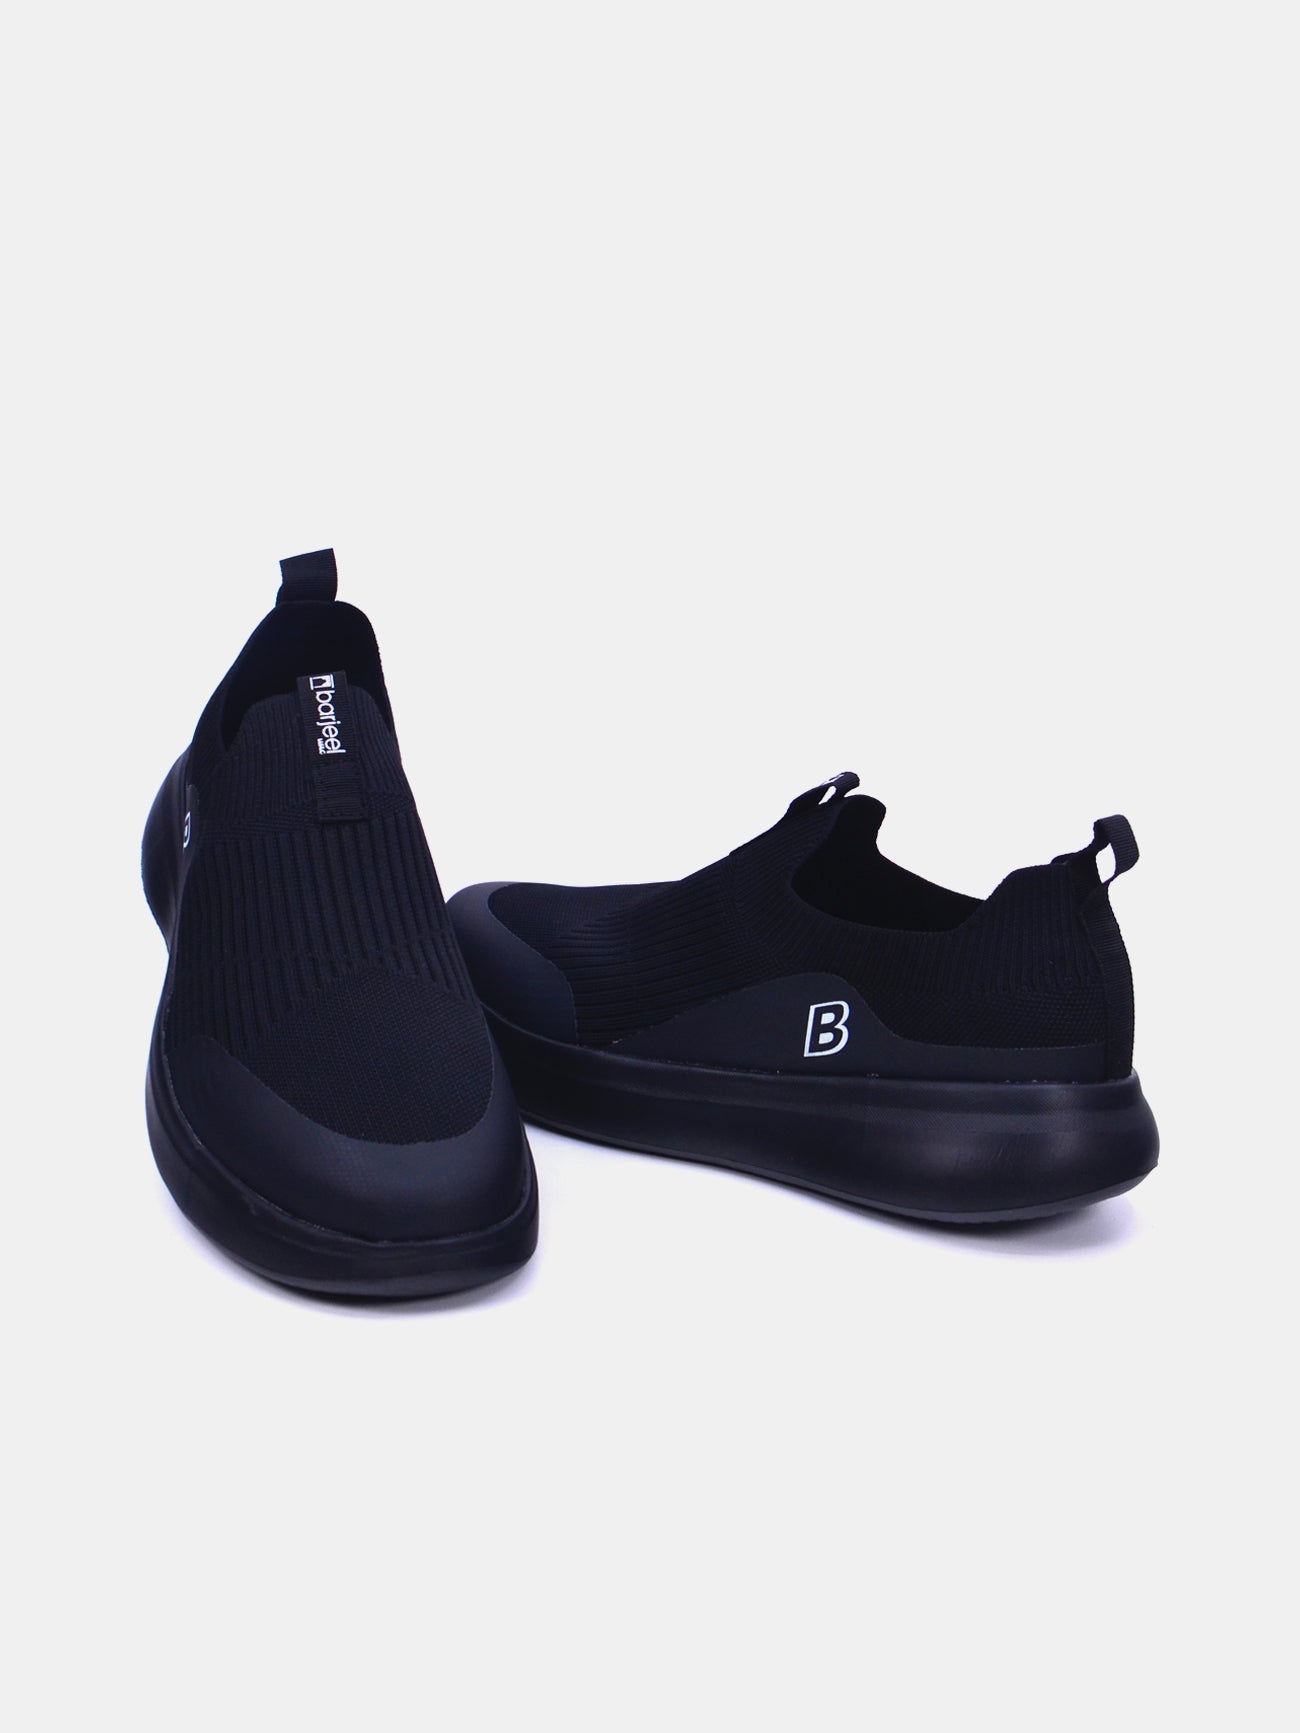 Barjeel Uno F35-W005 Men's Casual Shoes